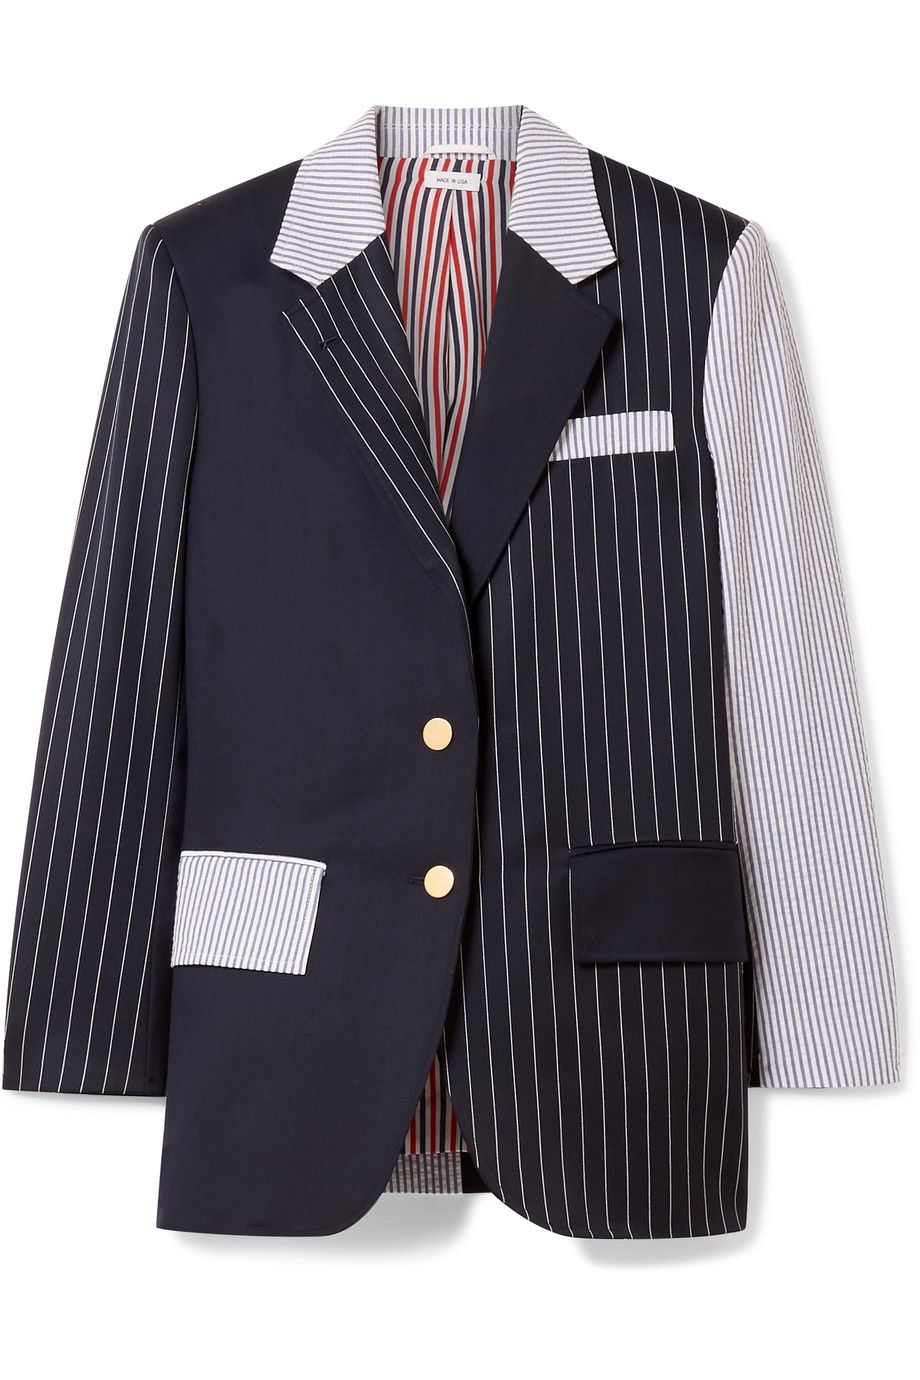 #PopbelaOOTD: Dress Like A Boss dengan Pilihan Blazer Keren Ini